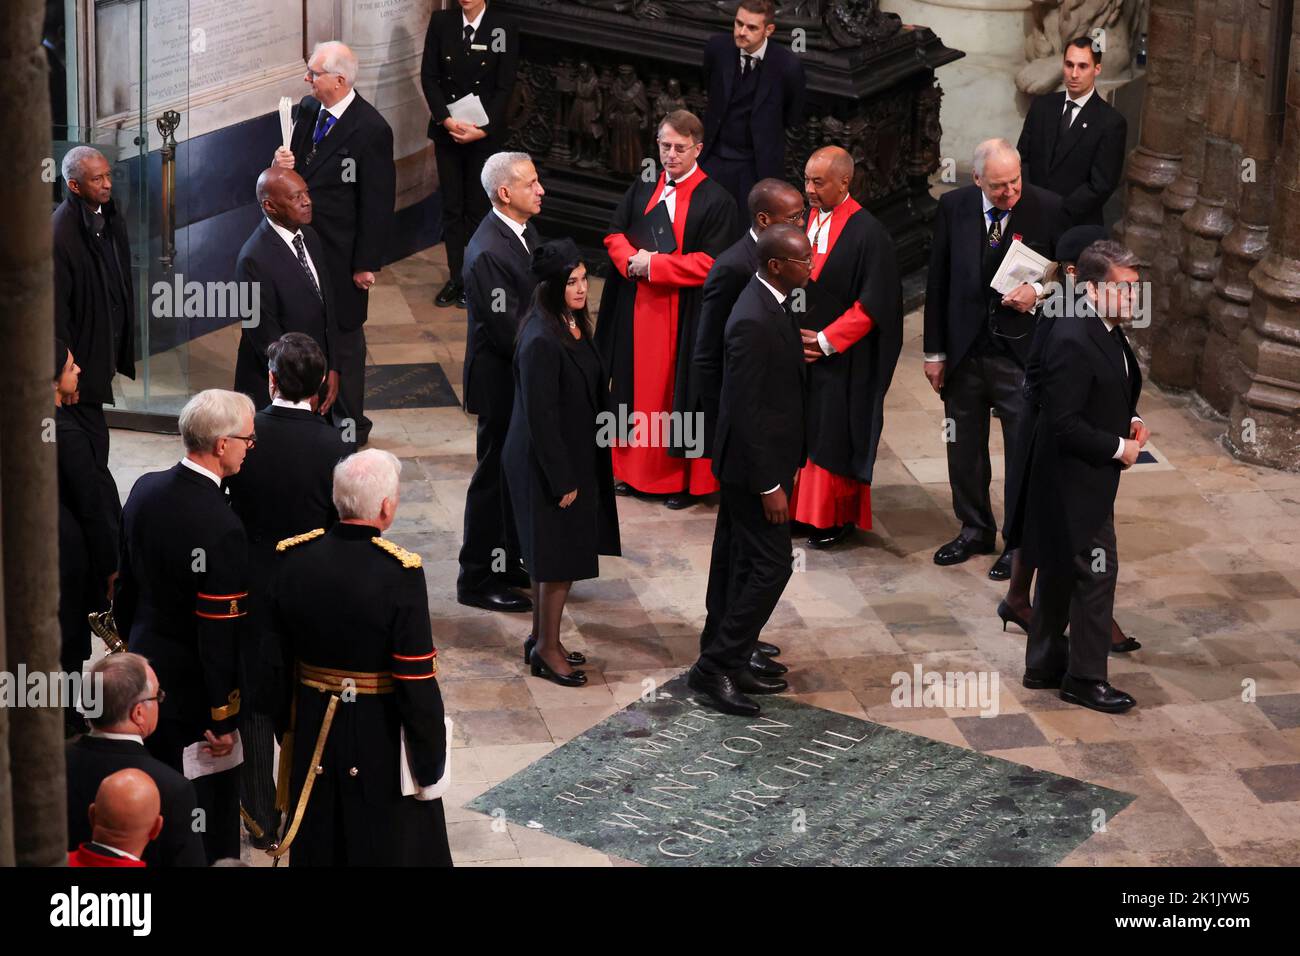 Mitglieder des Klerus begrüßen die Gäste, die am State Funeral of Queen Elizabeth II in Westminster Abbey, London, ankommen. Bilddatum: Montag, 19. September 2022. Stockfoto